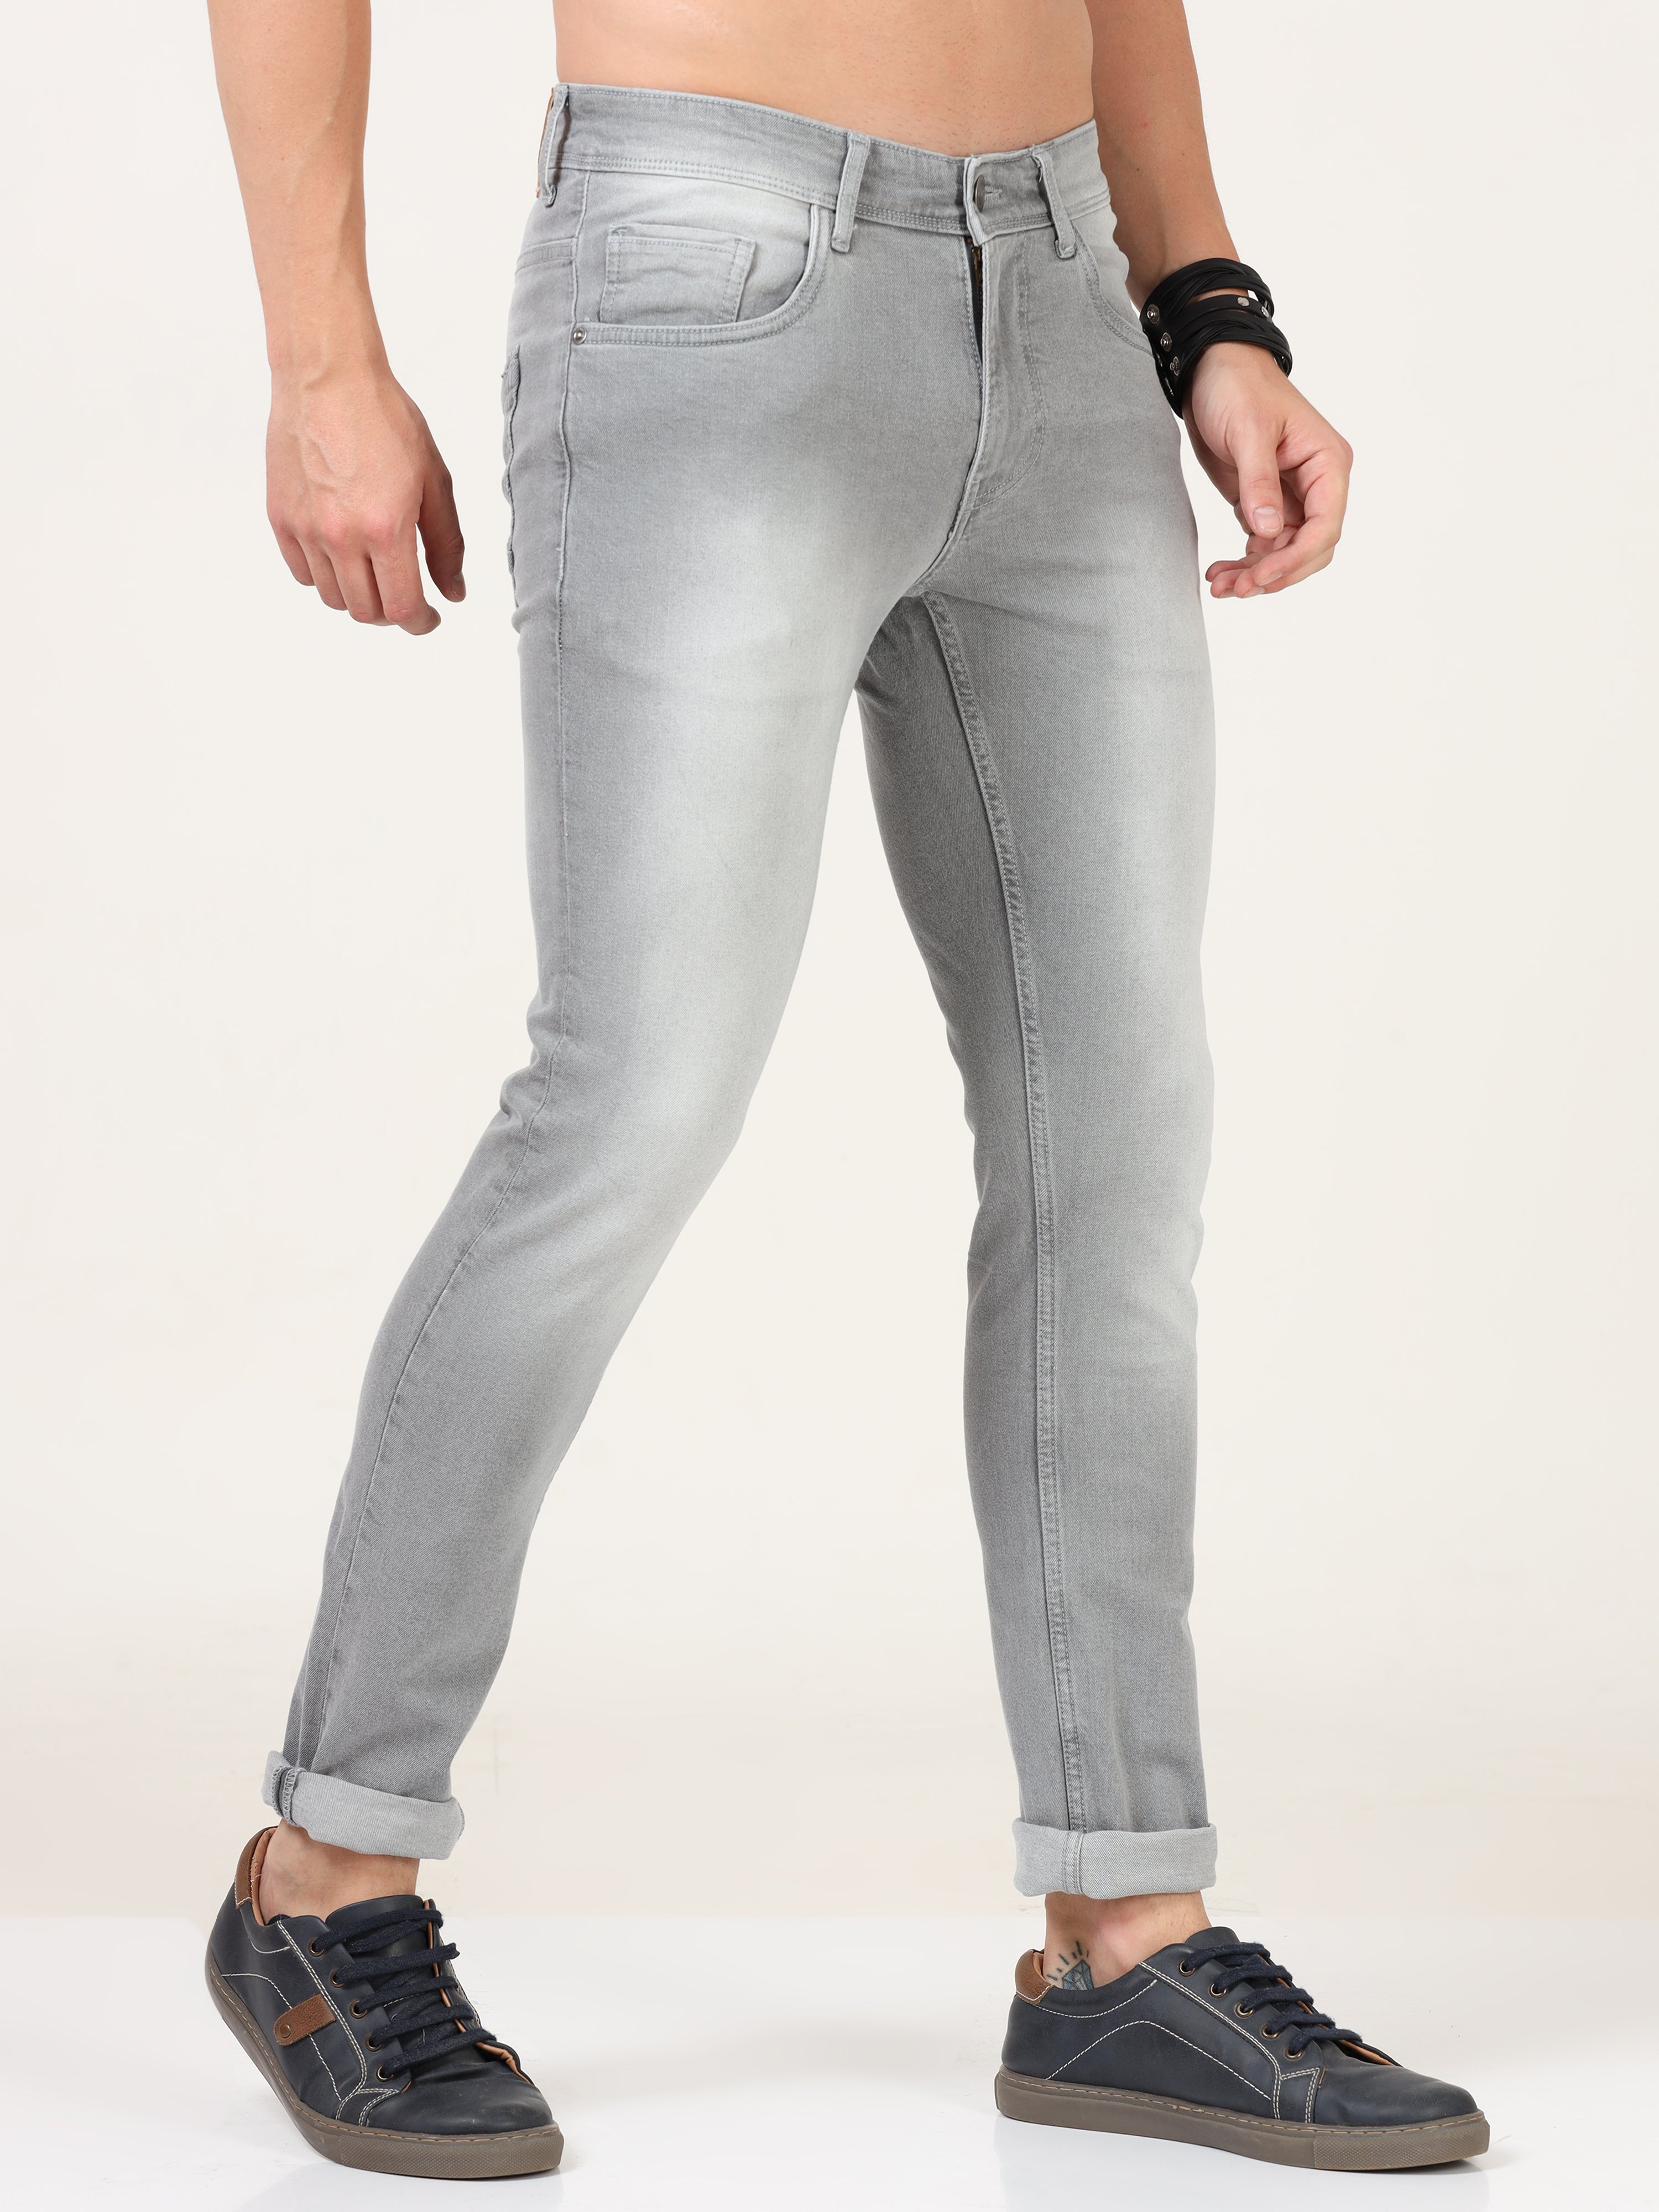 Men Skinny-Fit Grey Jean